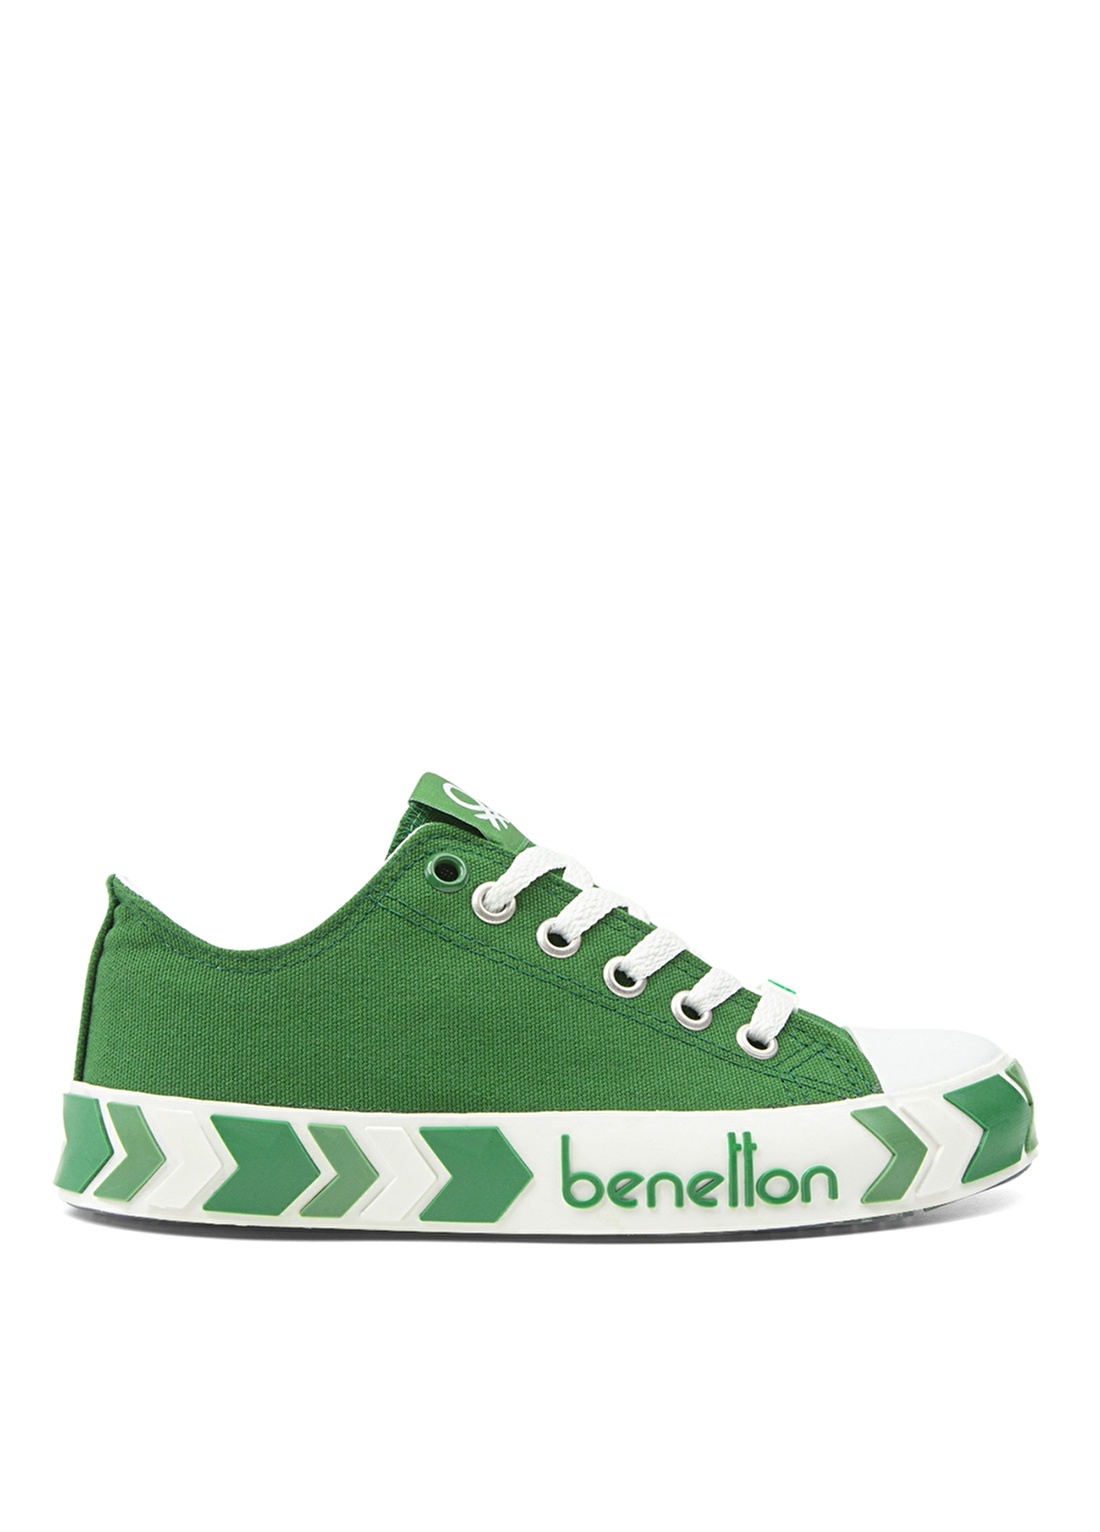 Benetton Yeşil Erkek Çocuk Keten Yürüyüş Ayakkabısı BN-30633 91